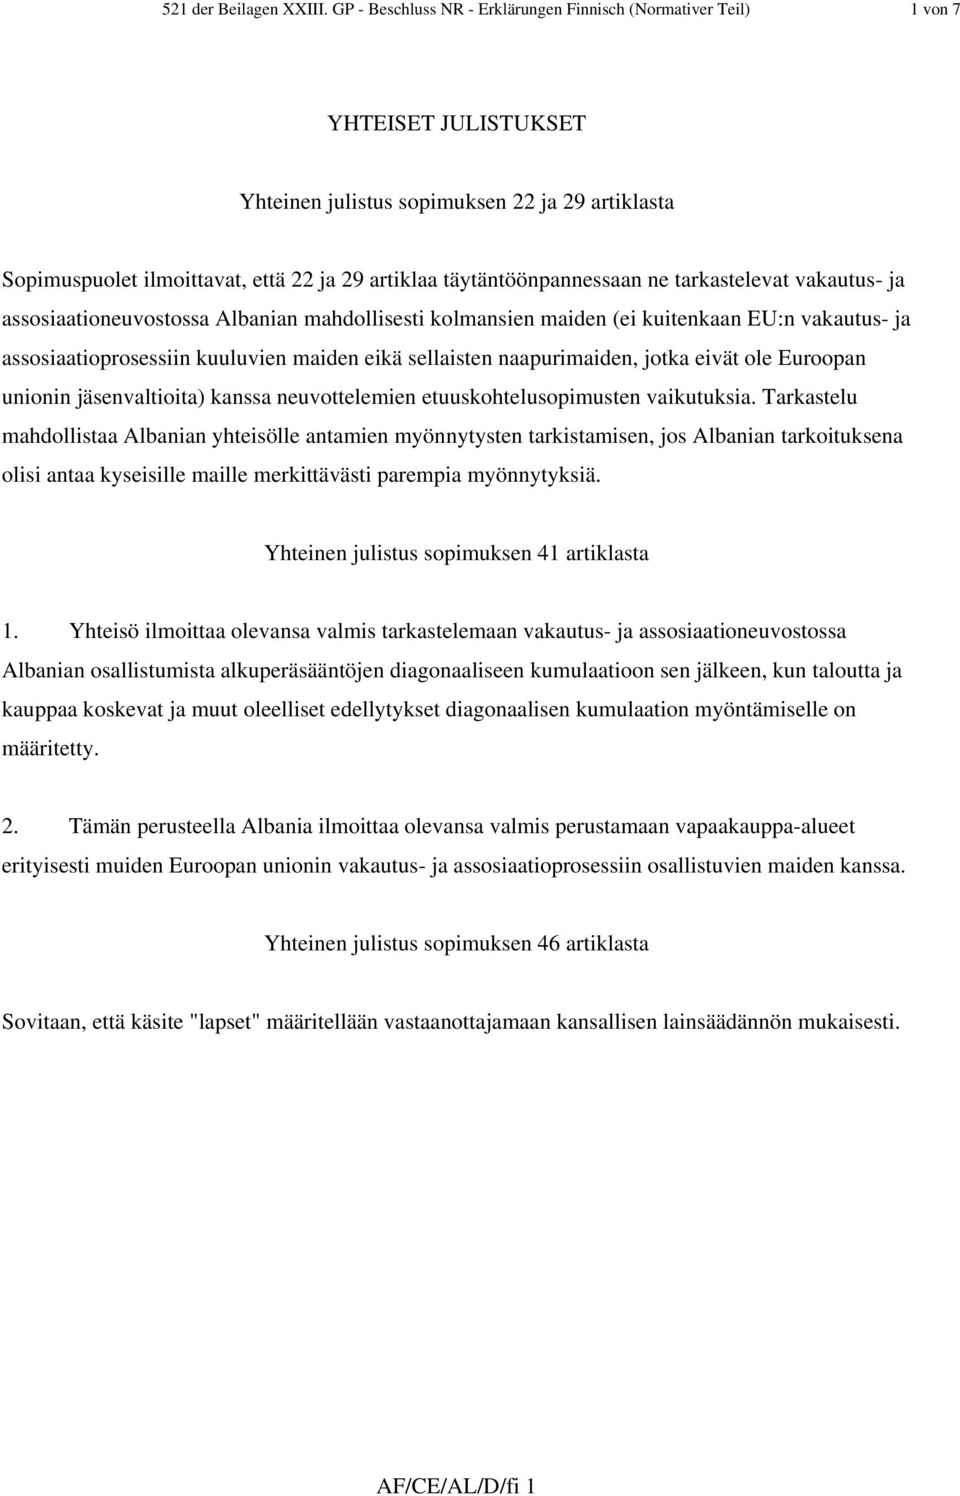 täytäntöönpannessaan ne tarkastelevat vakautus- ja assosiaationeuvostossa Albanian mahdollisesti kolmansien maiden (ei kuitenkaan EU:n vakautus- ja assosiaatioprosessiin kuuluvien maiden eikä